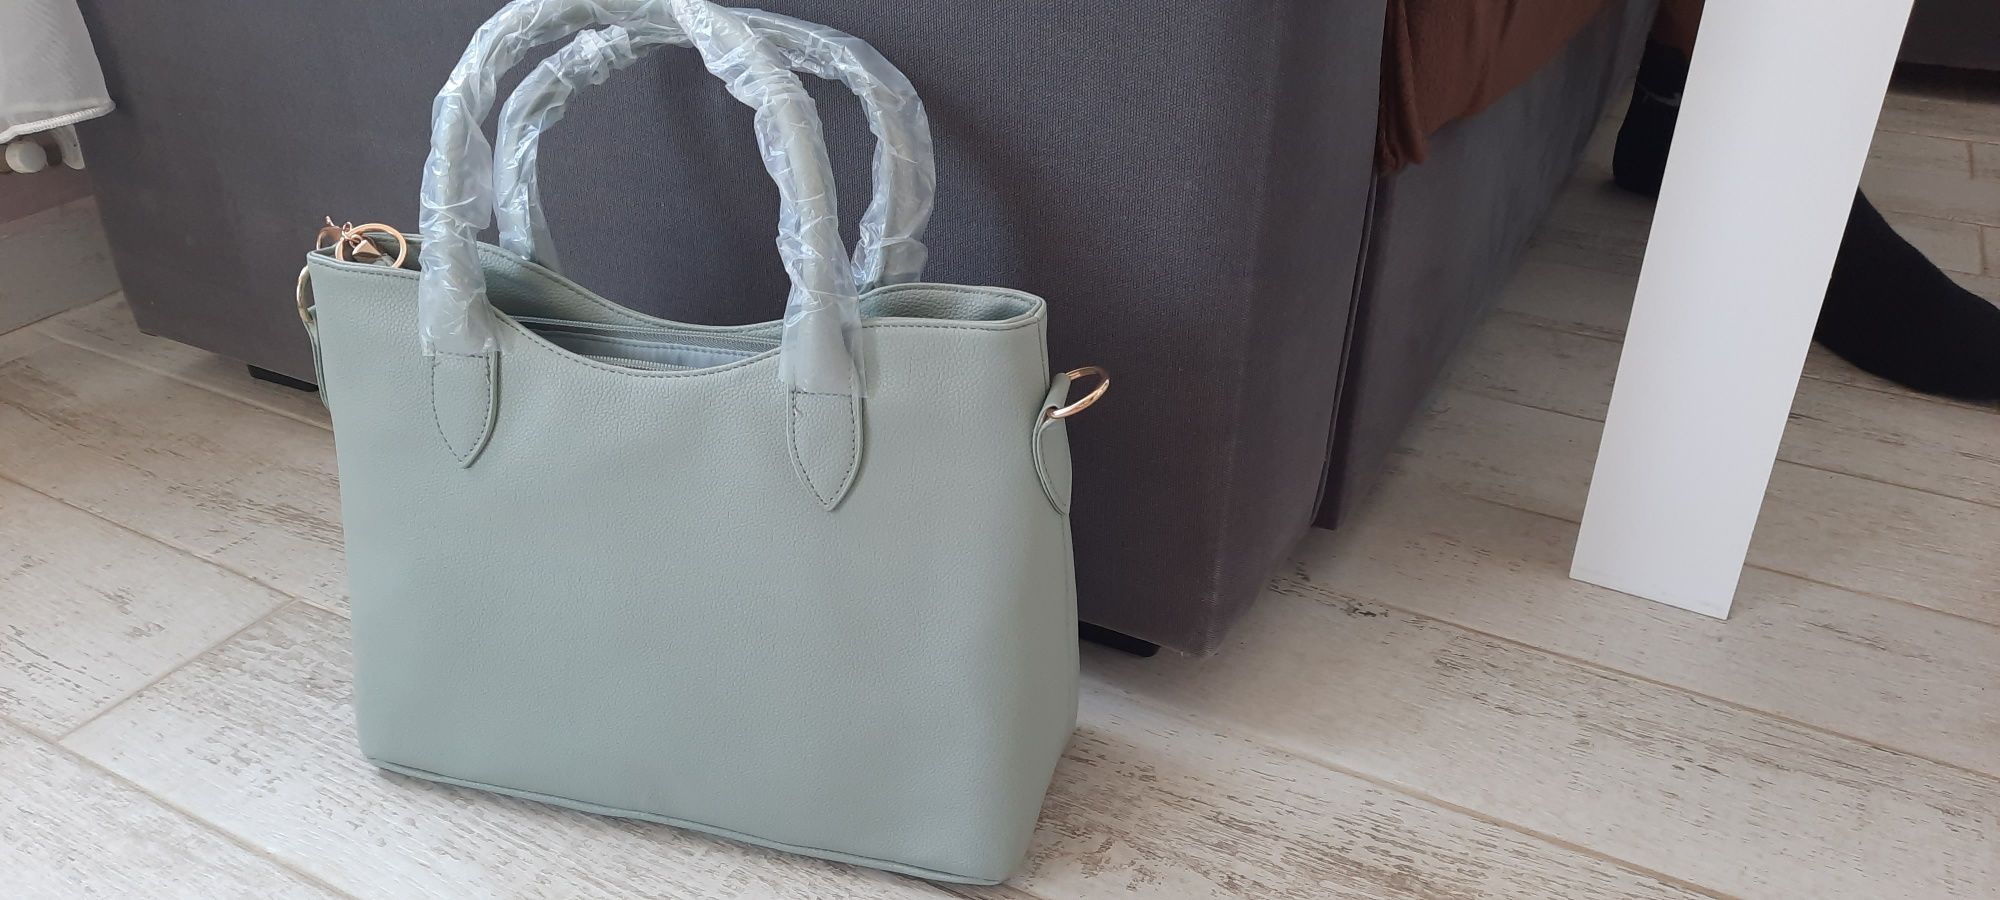 Дамска чанта, нова, сиво-зелен цвят